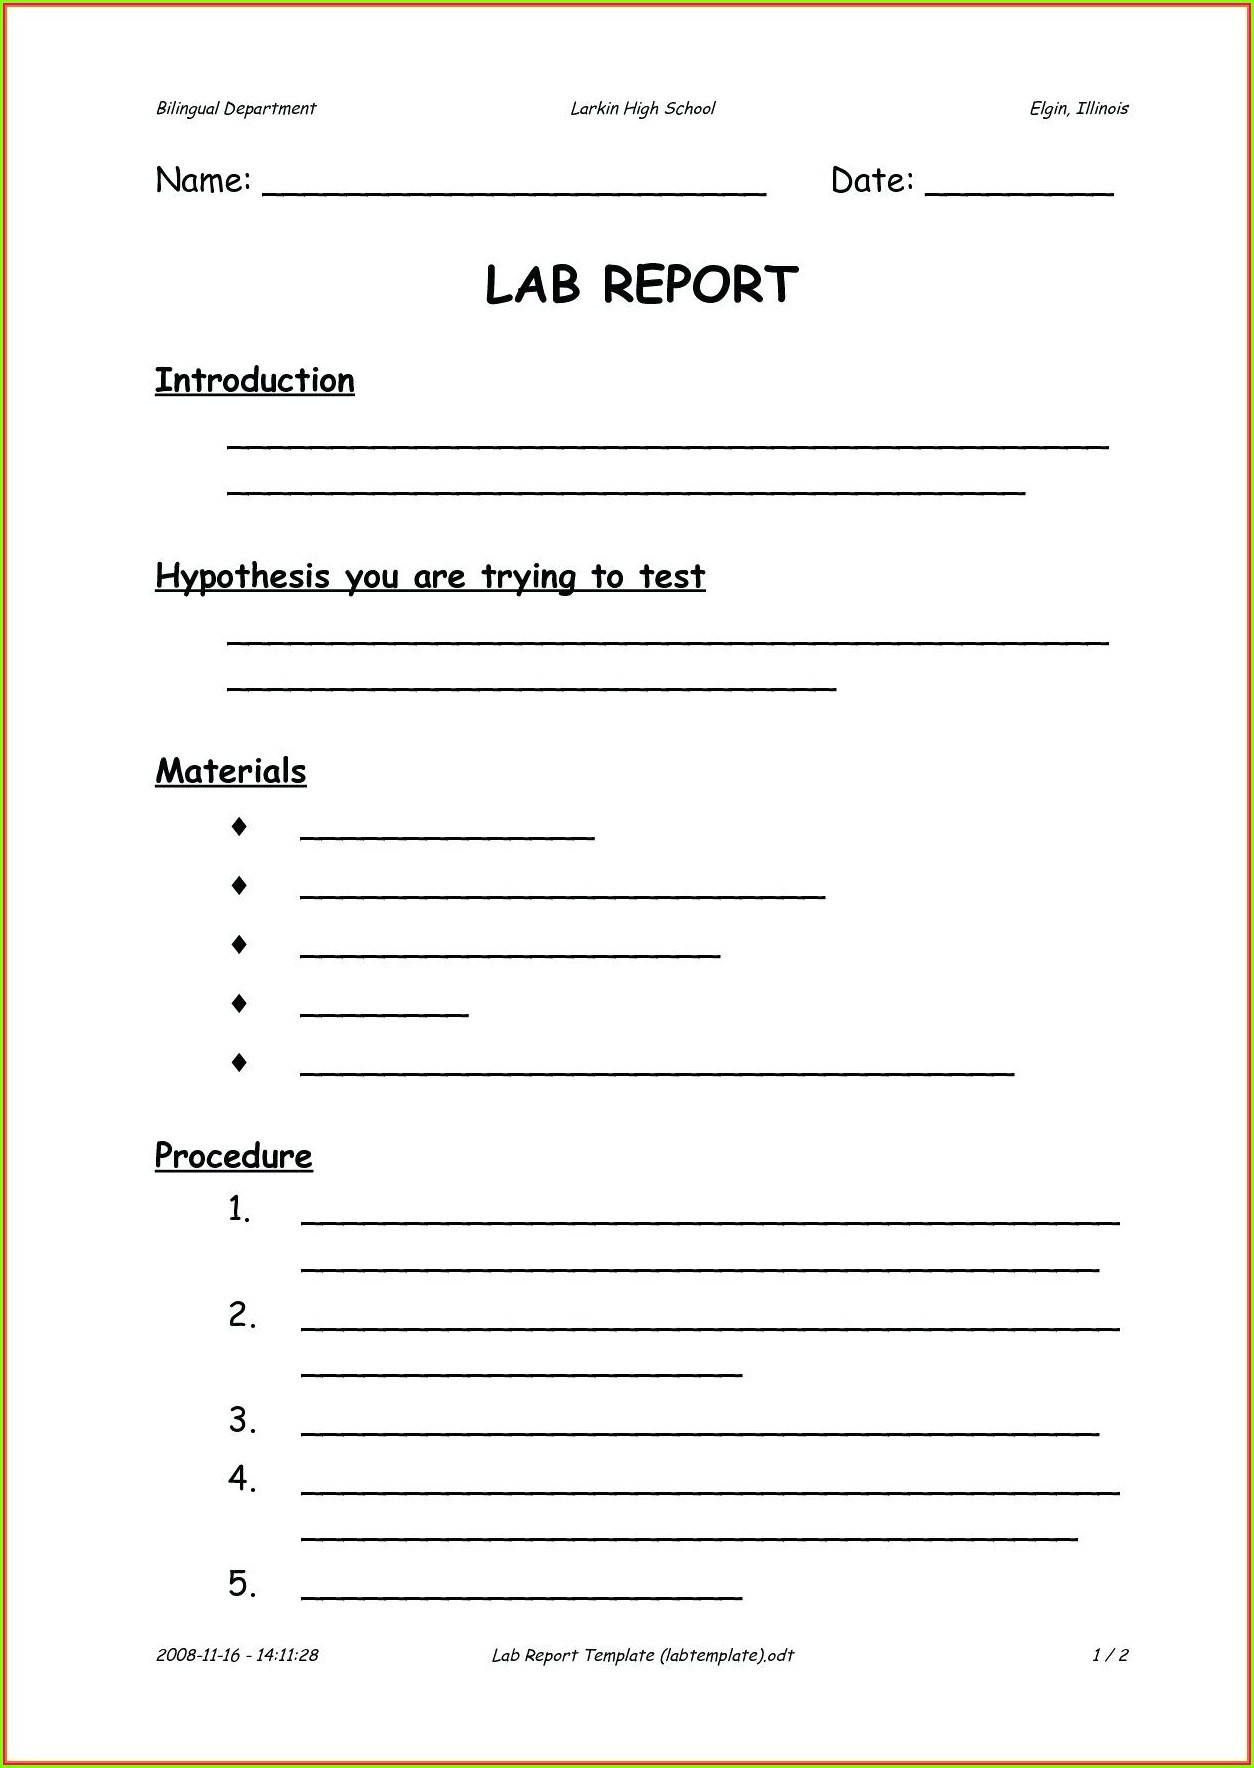 Scientific Method Worksheet Elementary High School Scientific Method Worksheet Printable Worksheets